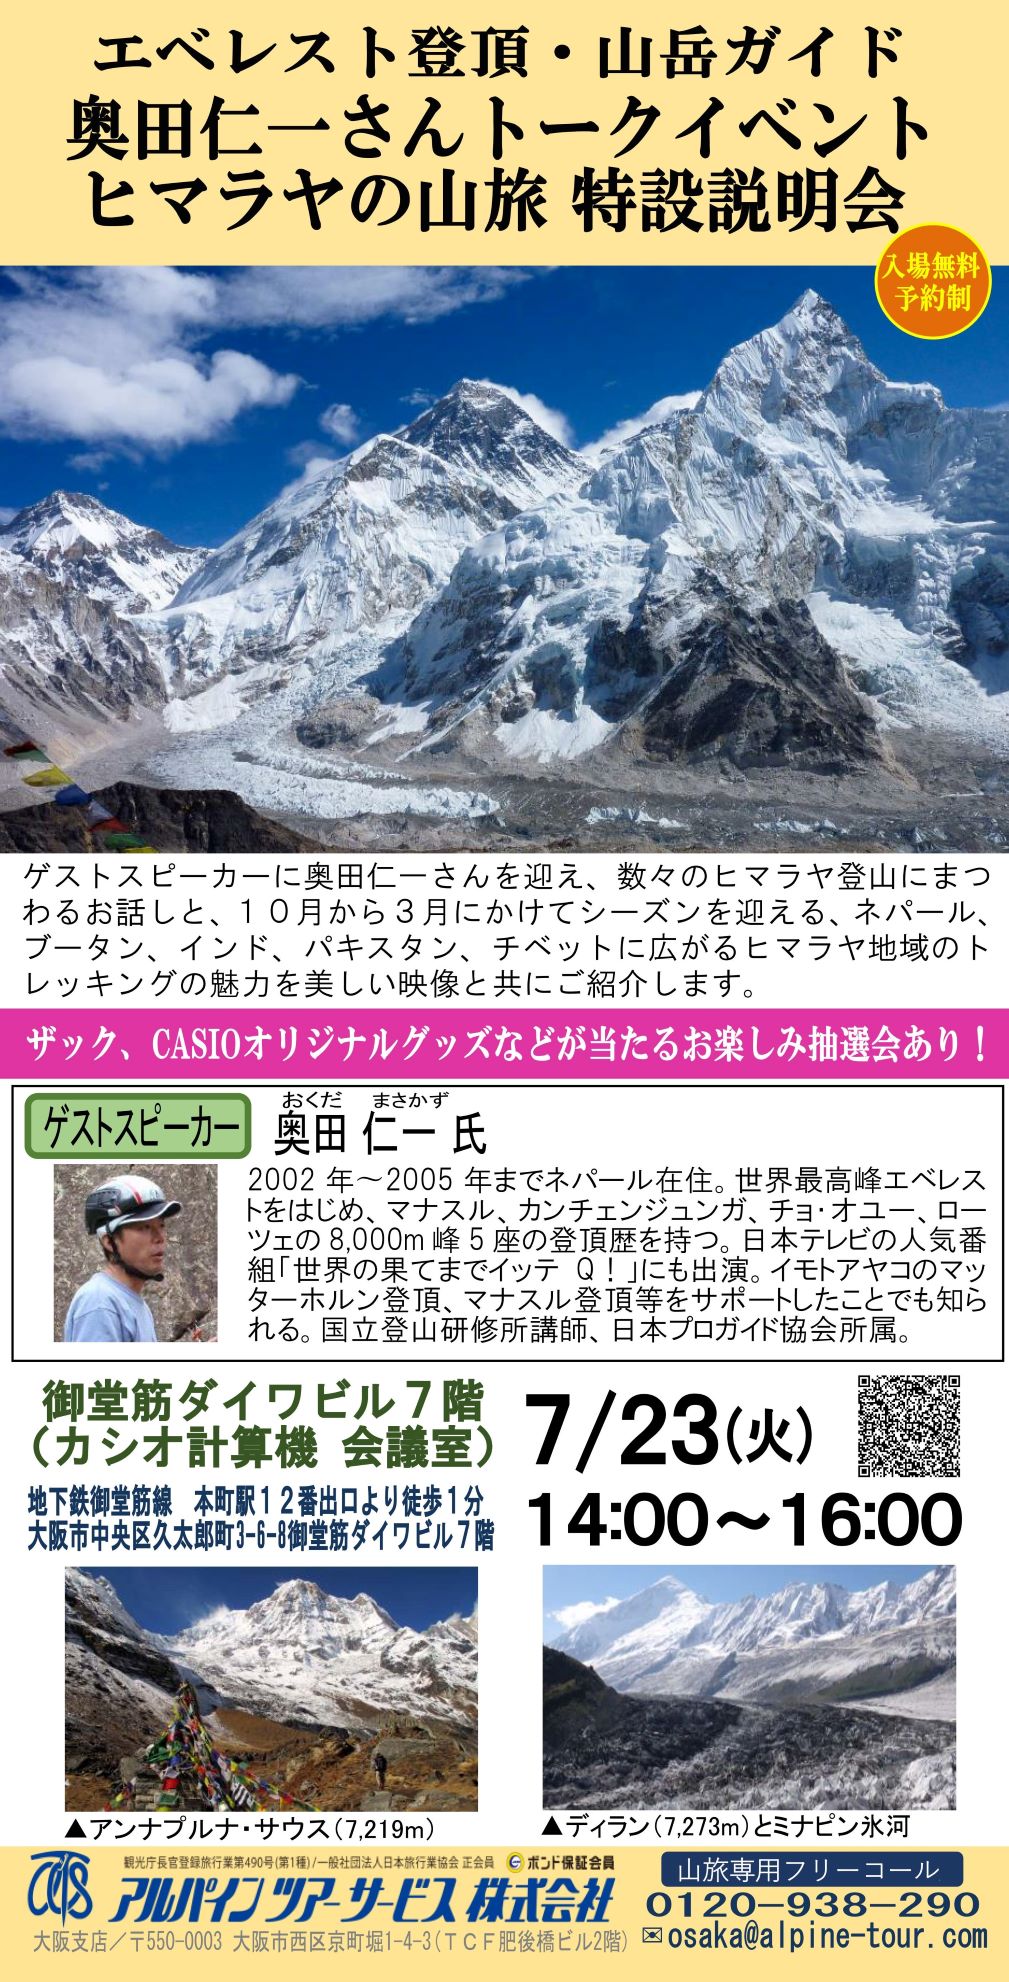 【大阪】エベレスト登頂・山岳ガイド奥田仁一氏トークイベント　ヒマラヤの山旅特設説明会